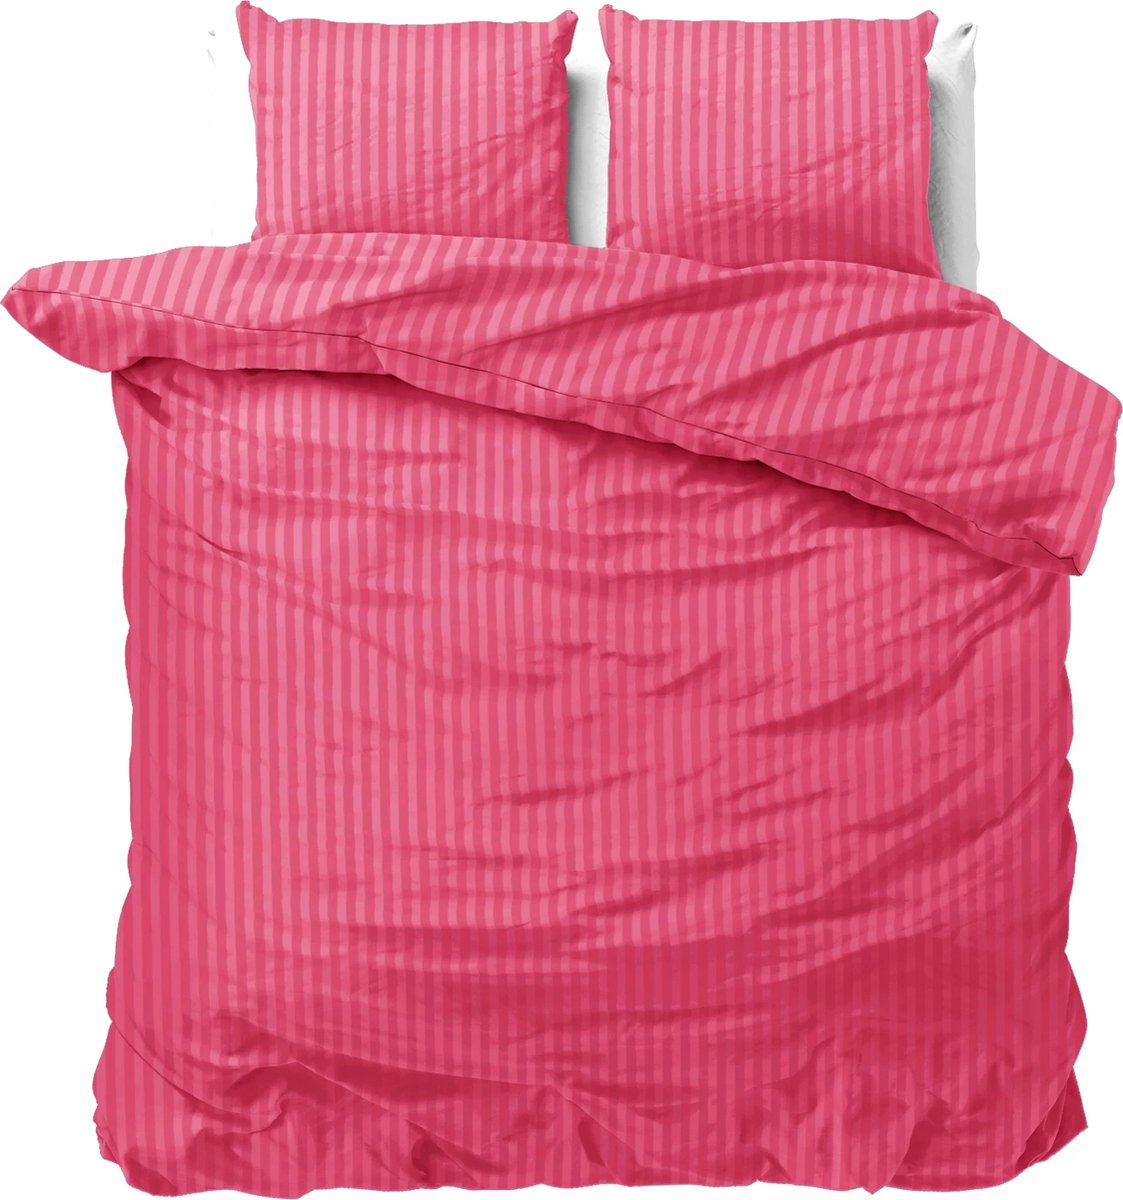 Luxe dekbedovertrek Stripes Fel roze - 140x200/220 (eenpersoons) - zacht en fijne kwaliteit - stijlvolle uitstraling - met handige drukknopen